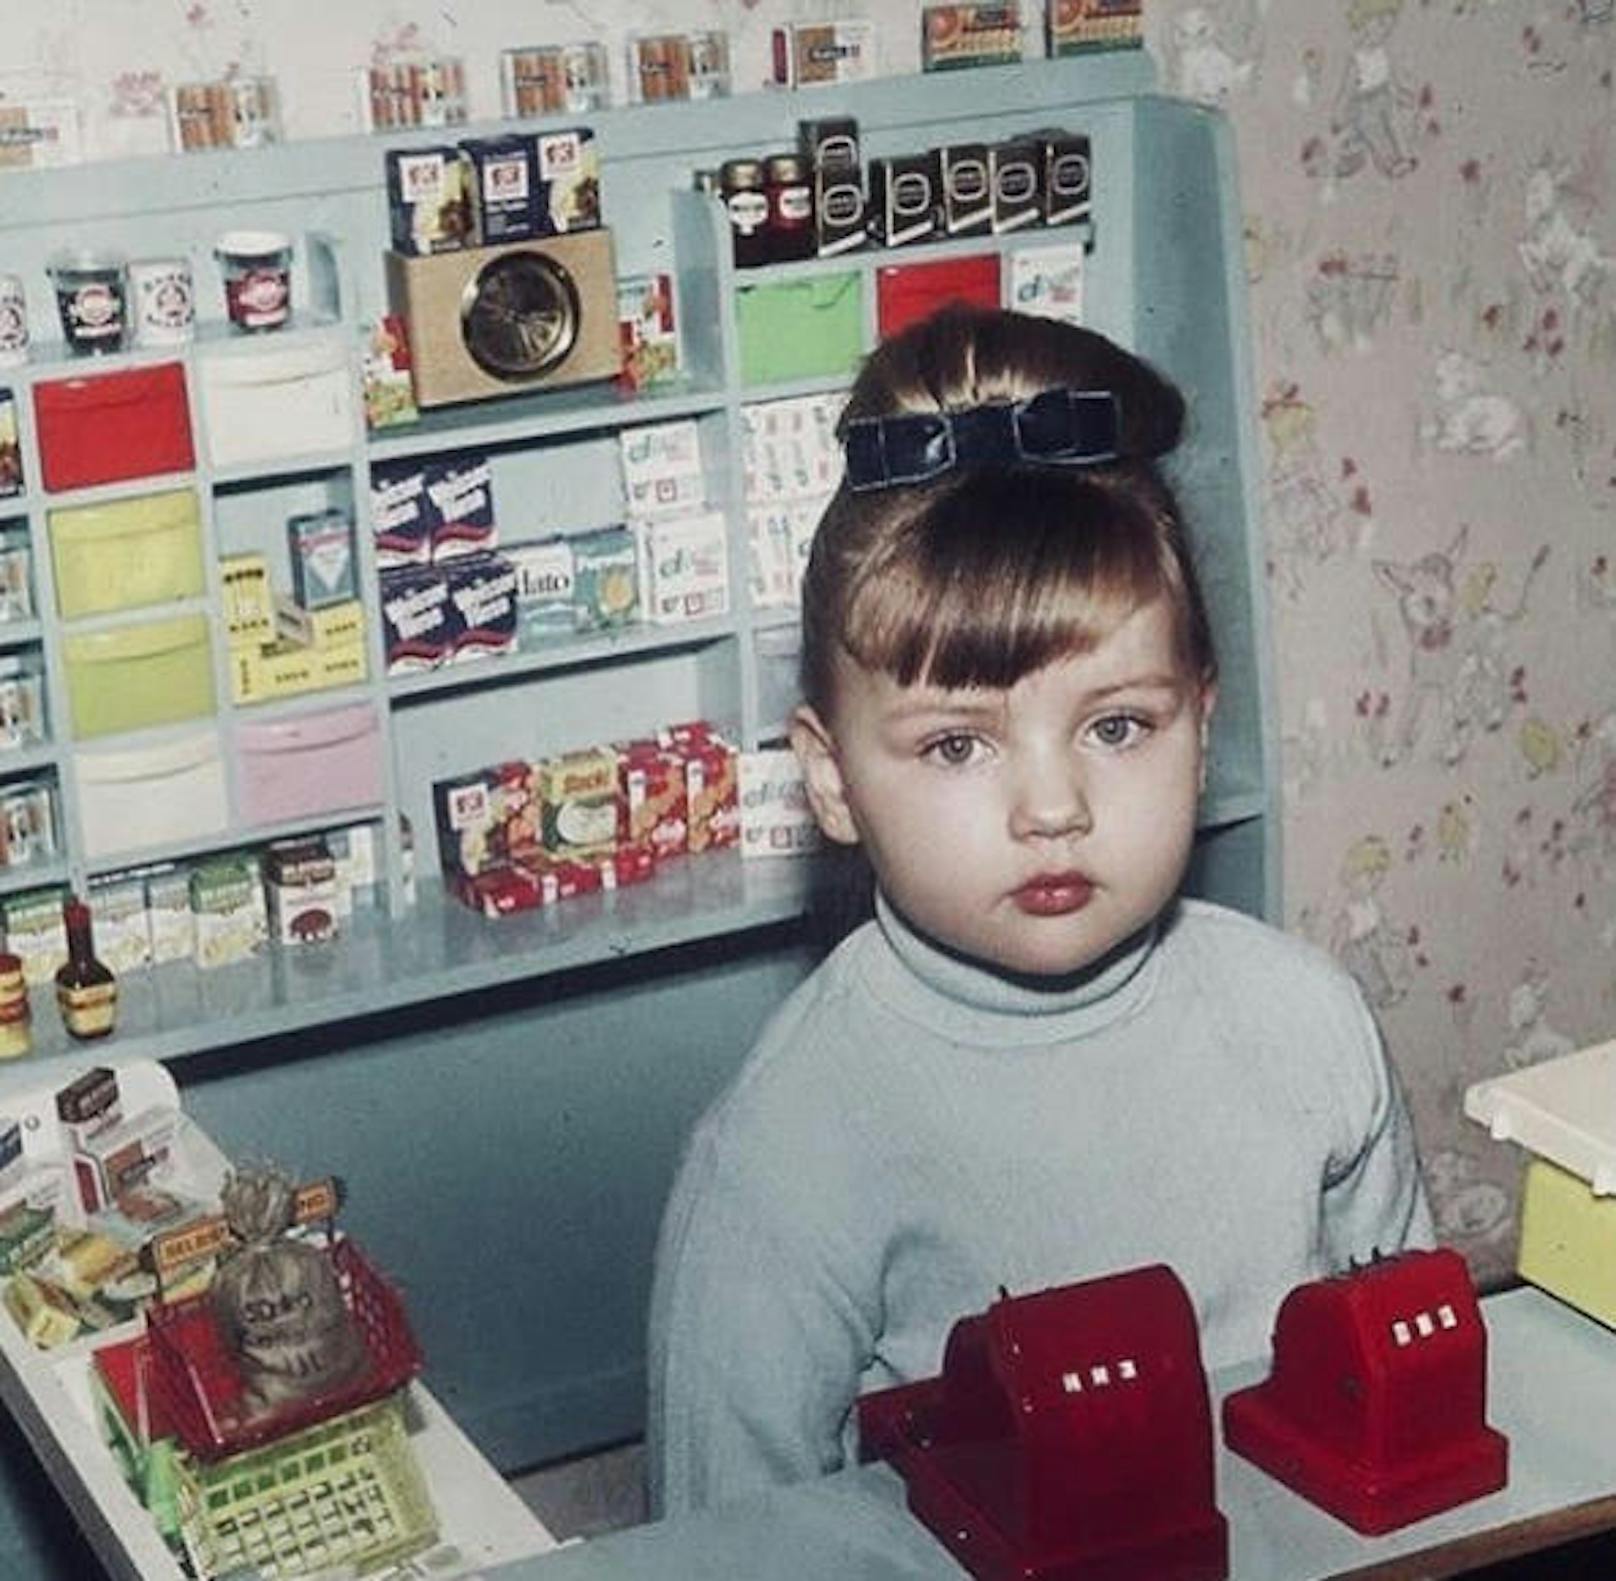 30.1.2020: Auf diesem Foto ist Schauspielerin<strong> Veronica Ferres</strong> gerade mal drei Jahre alt. "Ob ich Spaß im Verkauf hatte? Wenigstens saß die Schleife mit drei Jahren", schrieb sie dazu. 